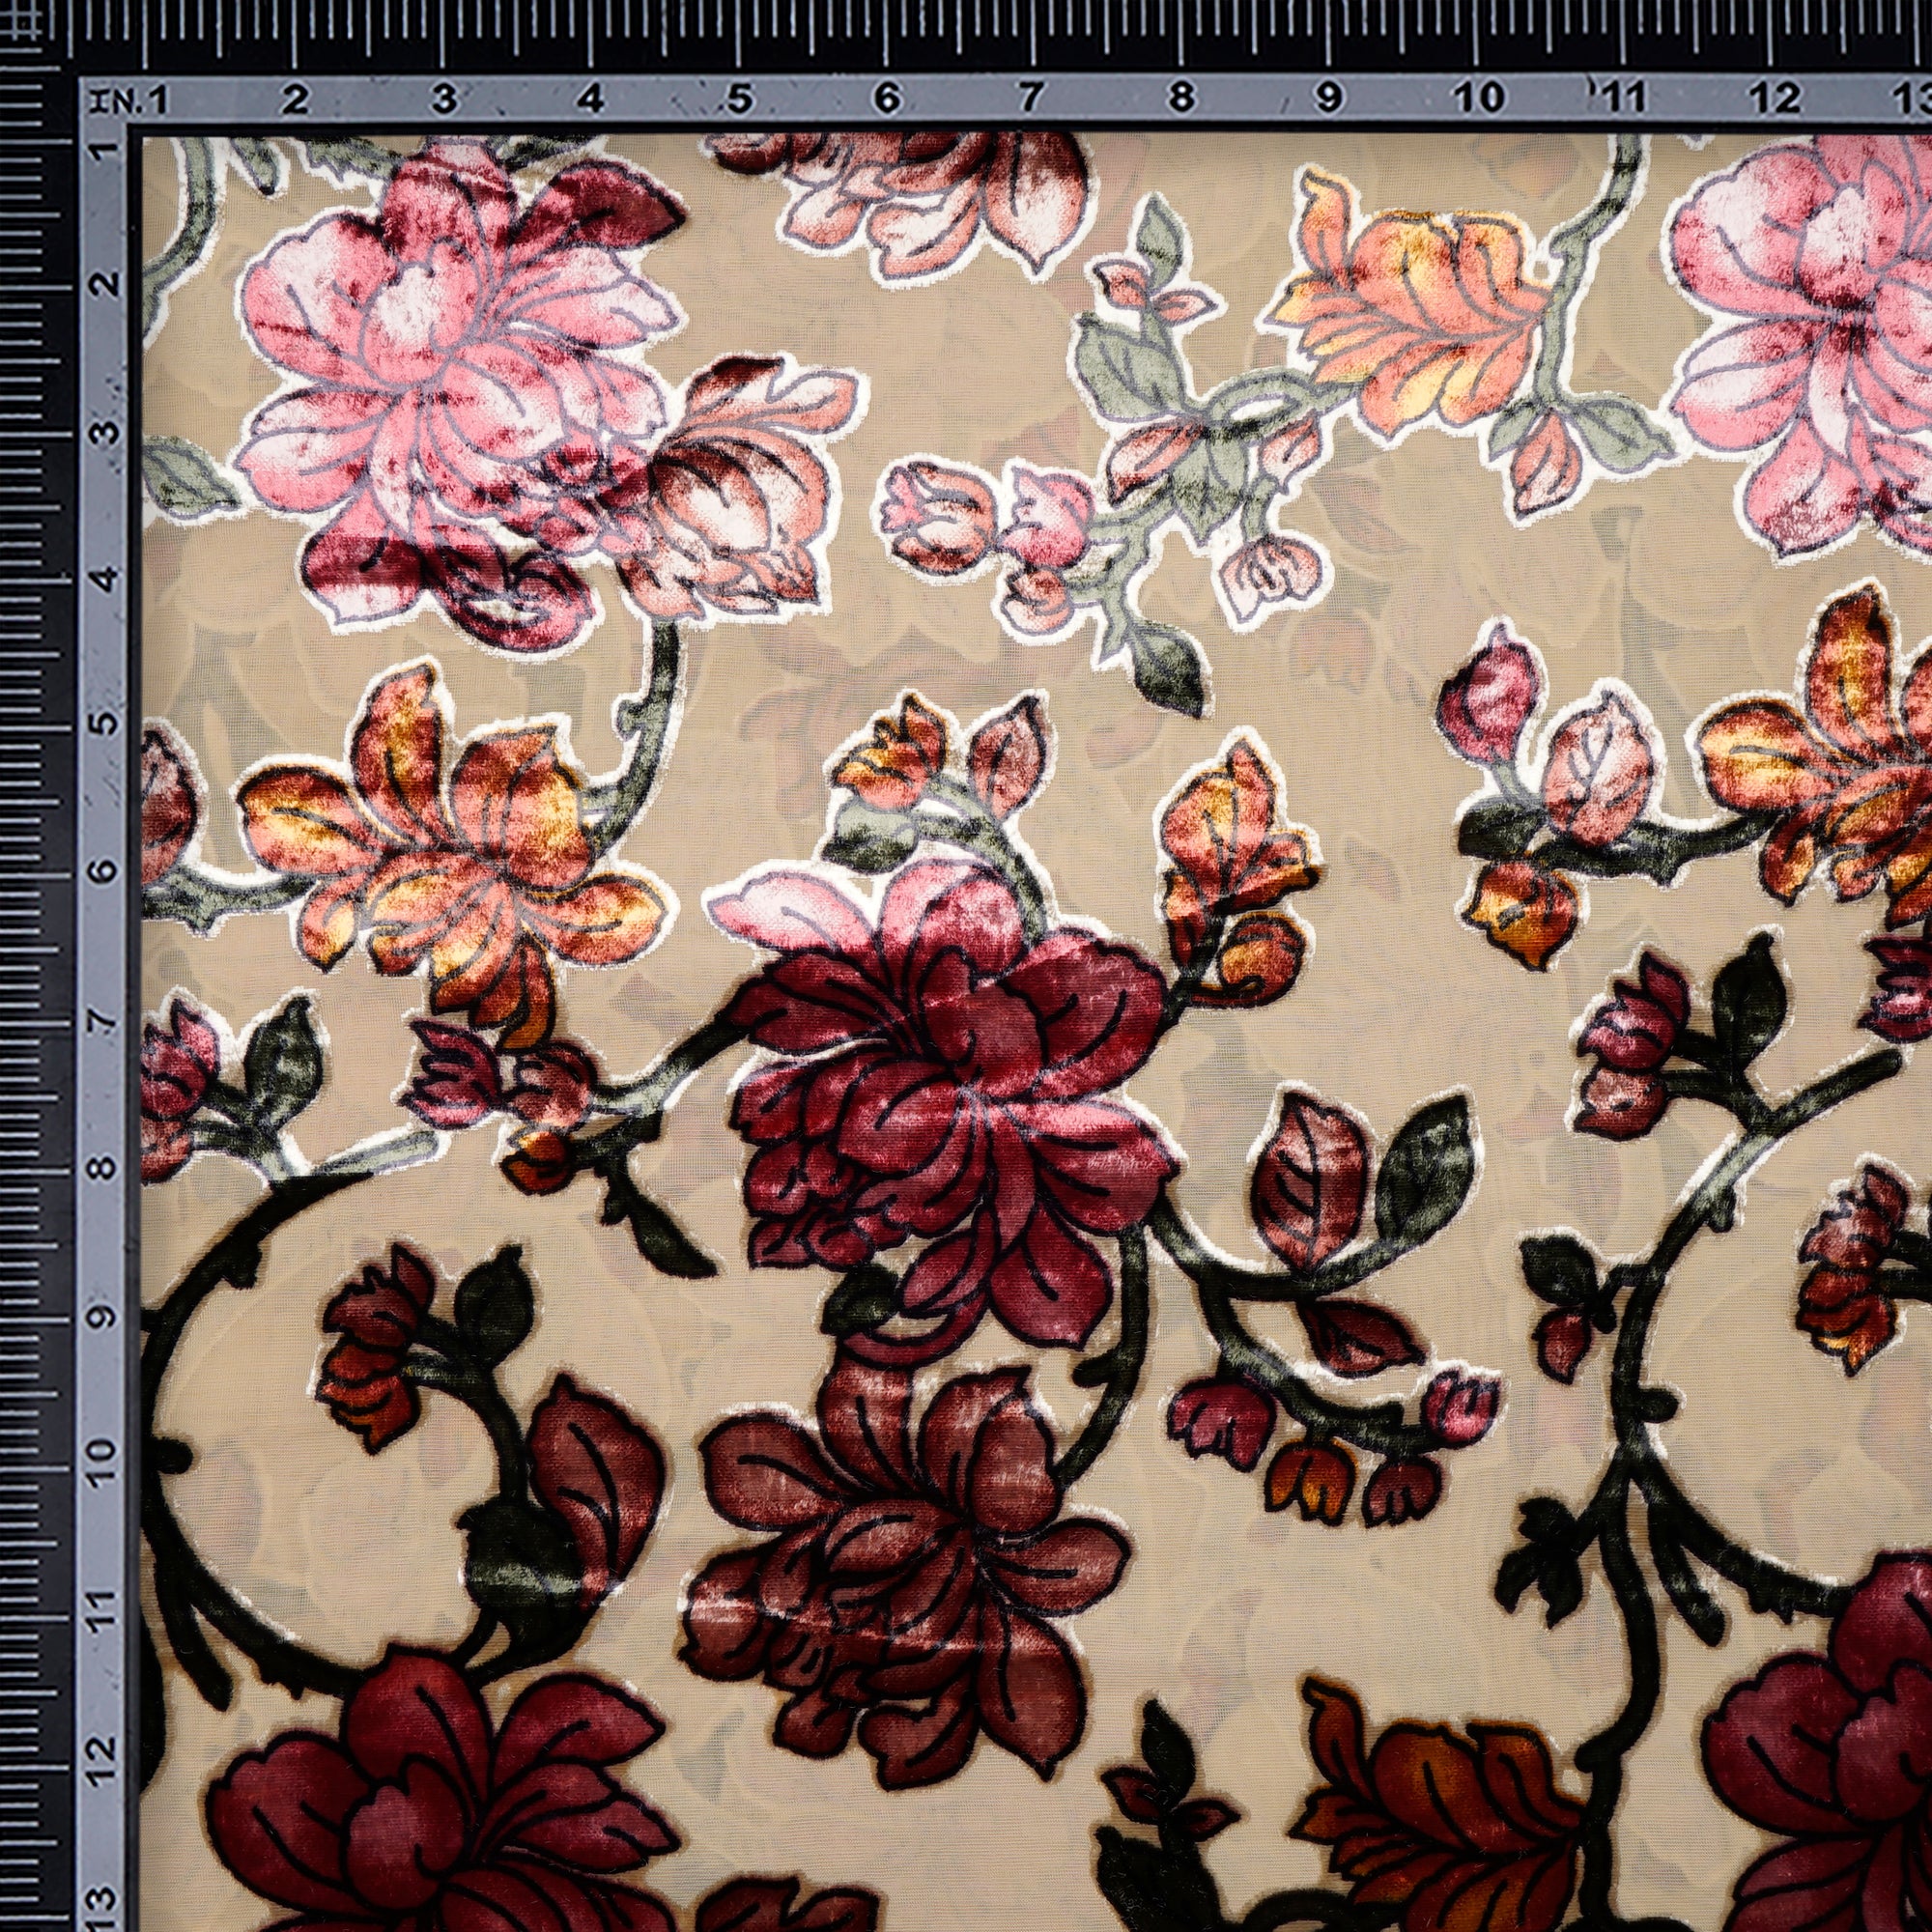 Seamless Floral Pattern on Burnout Velvet Fabric - Style P-613-VELVET